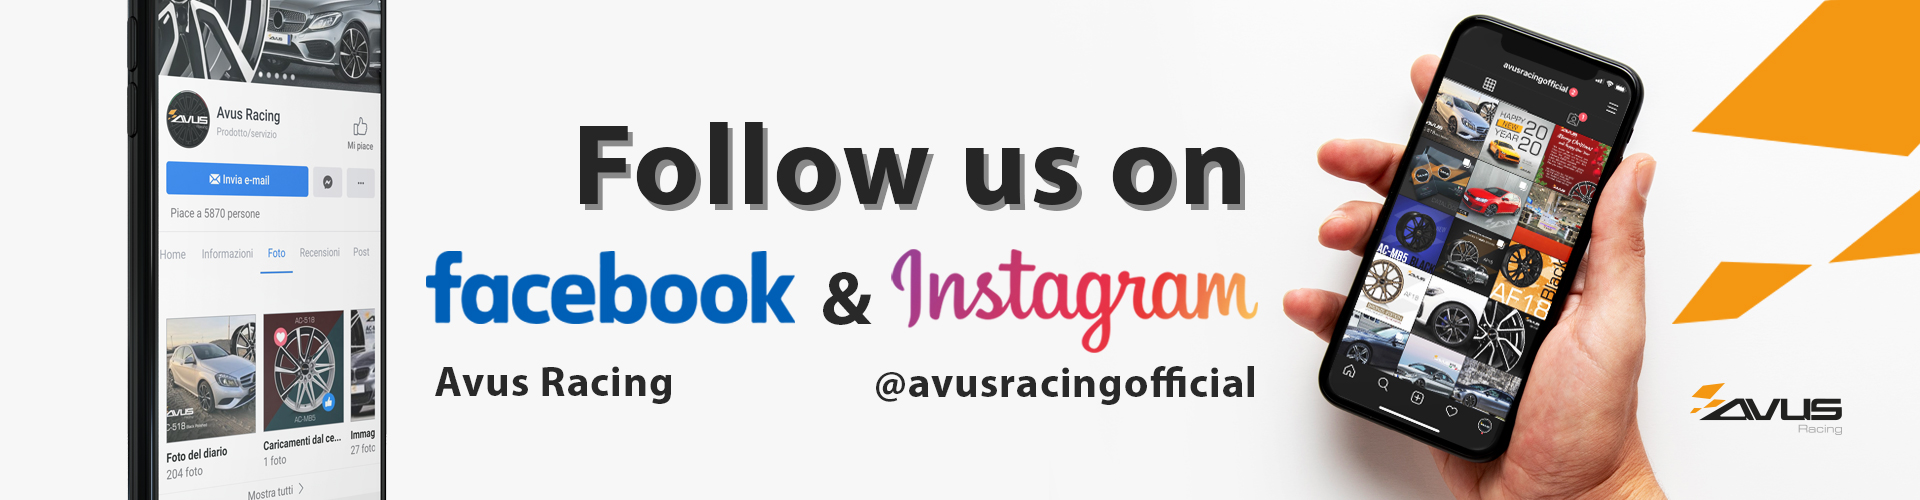 instagram facebook avus racing